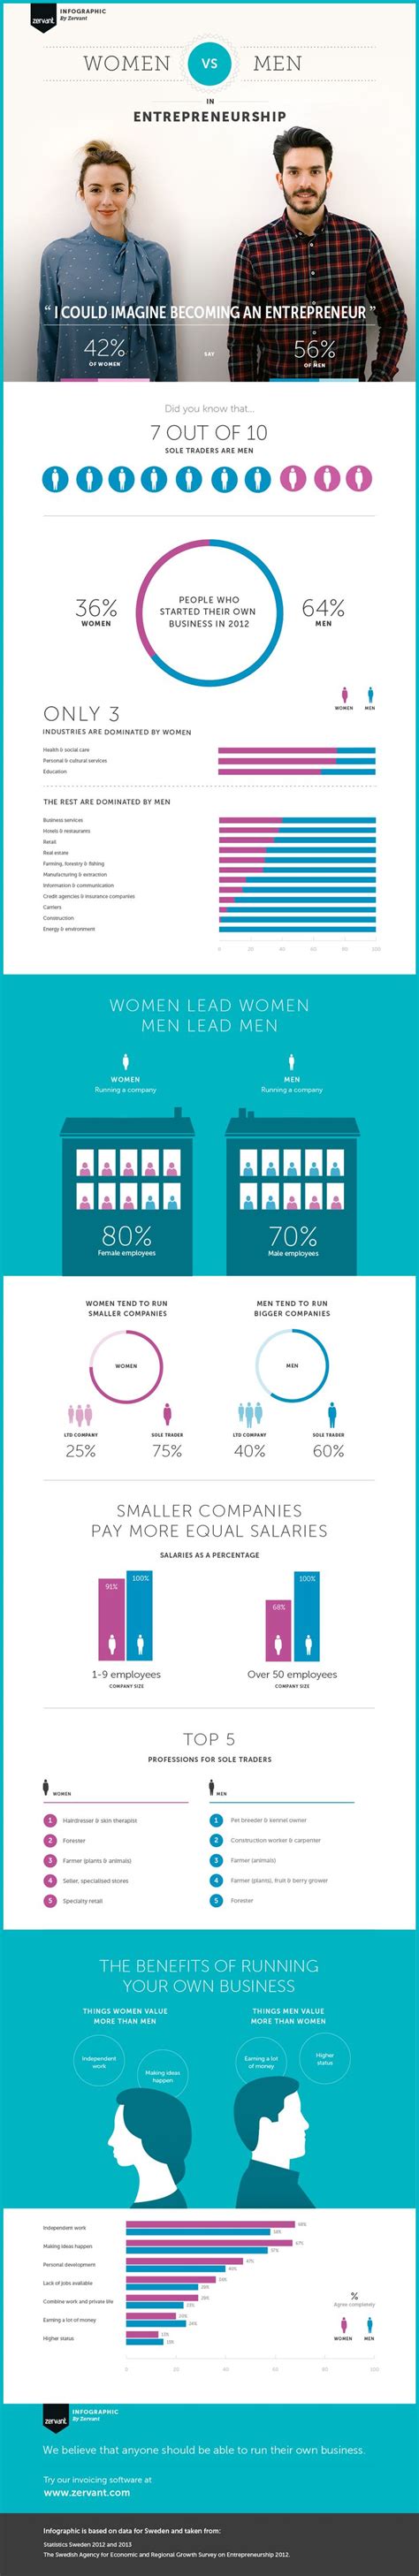 Men Vs Women In Entrepreneurship Infographic Visualistan